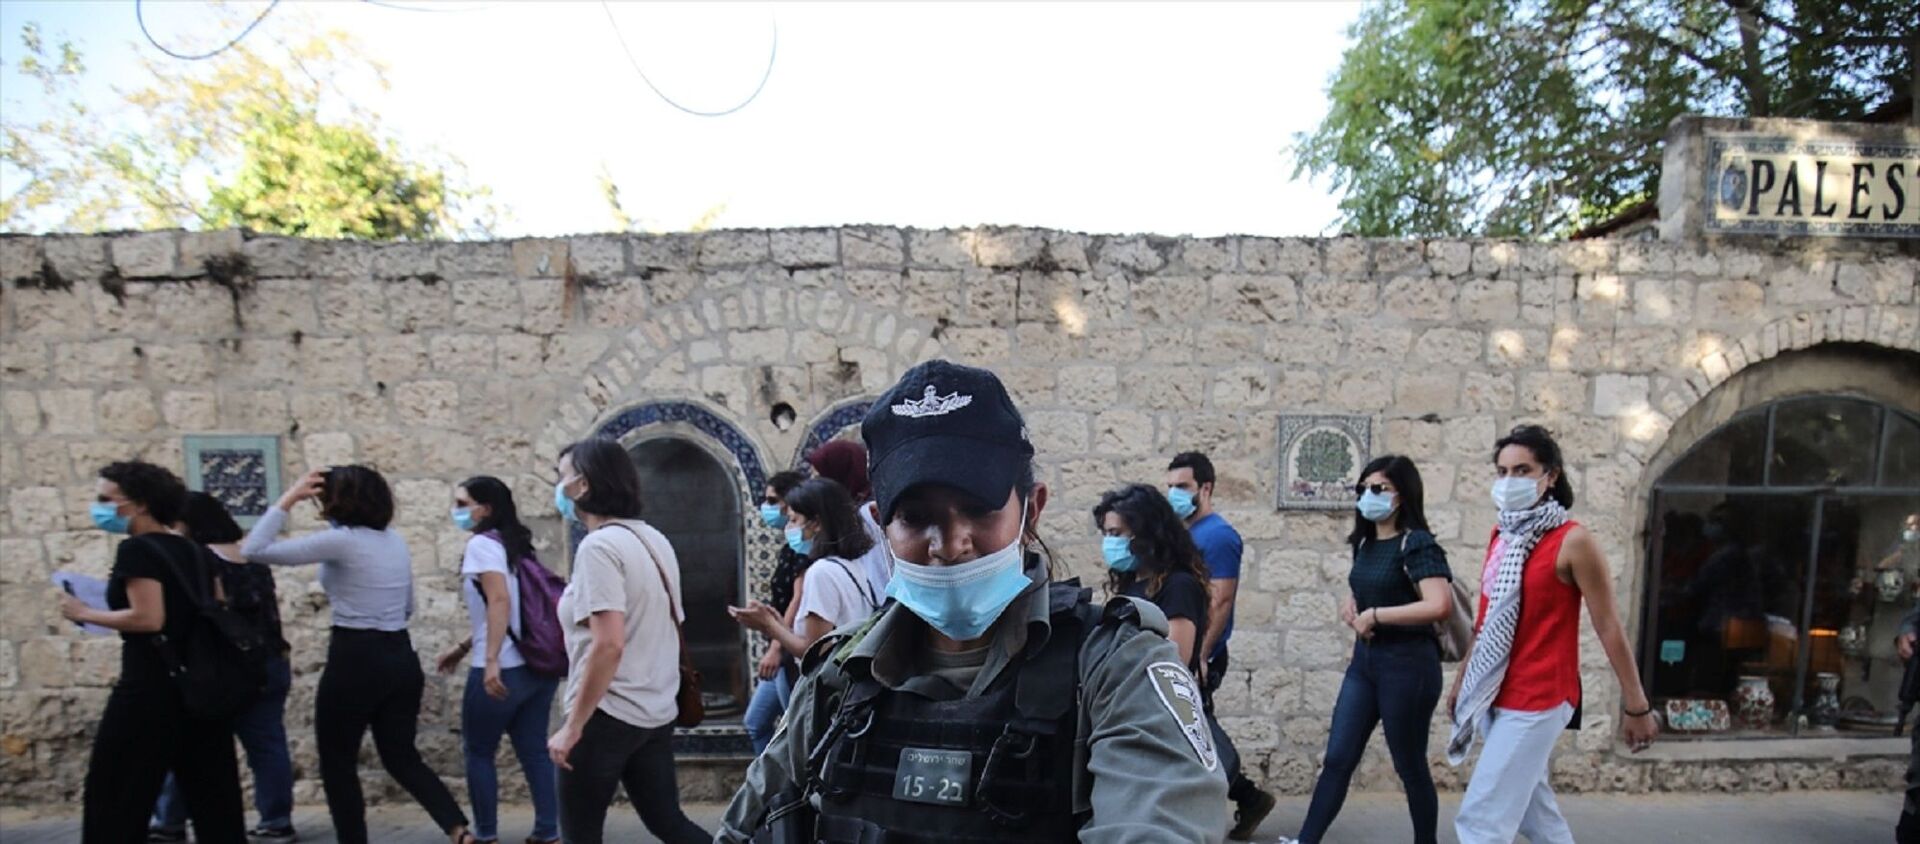 İsrail polisi, Doğu Kudüs’te otizmli İyad Hallak'ın öldürülmesine tepki amacıyla düzenlenen gösteriye müdahale ederek 3 Filistinli kadını gözaltına aldı. - Sputnik Türkiye, 1920, 09.05.2021